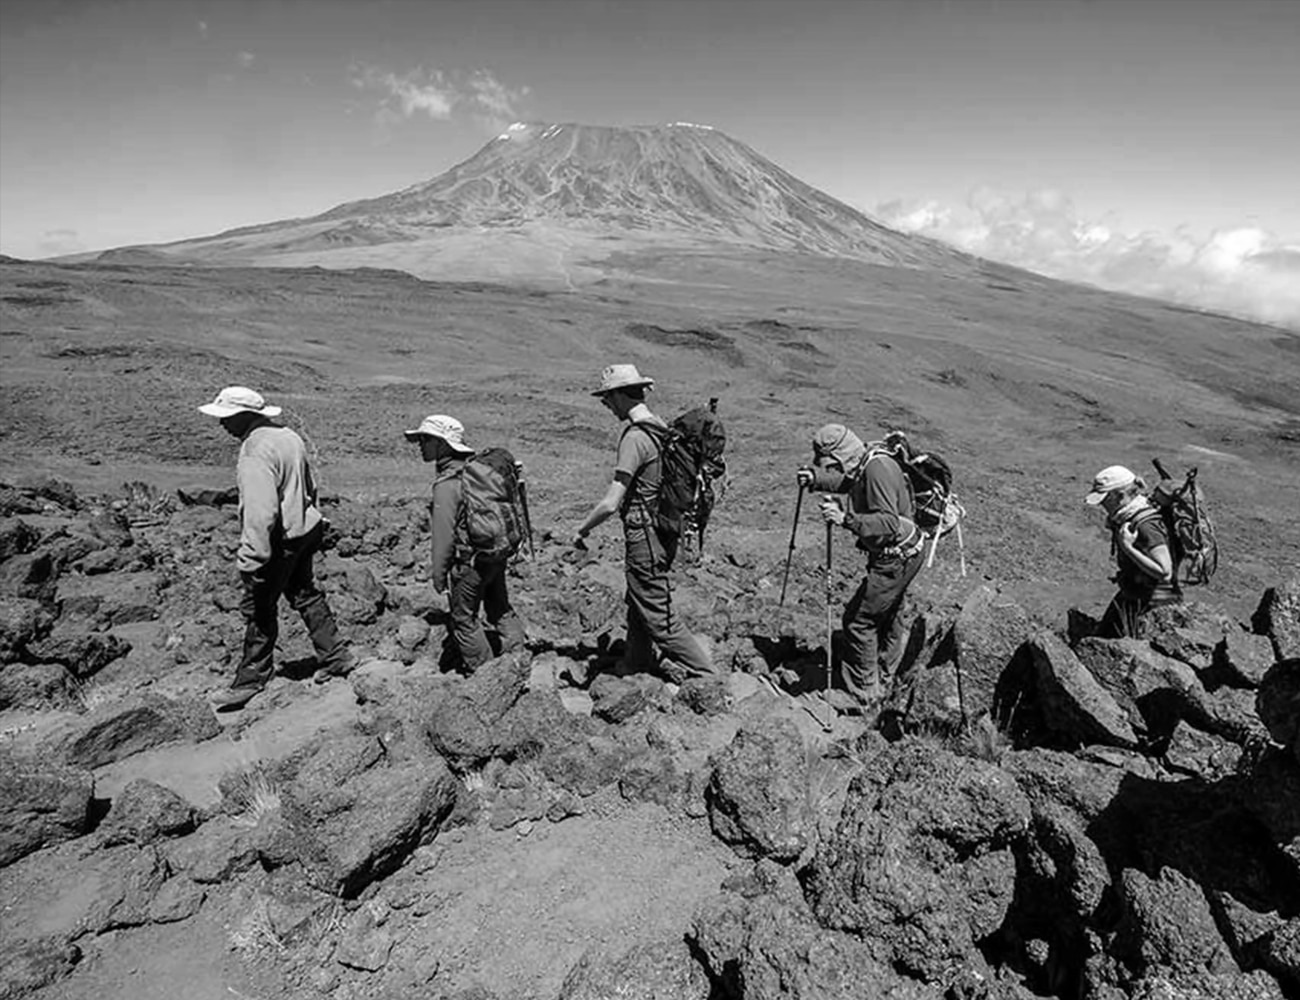 People Trekking at Mount Kilimanjaro